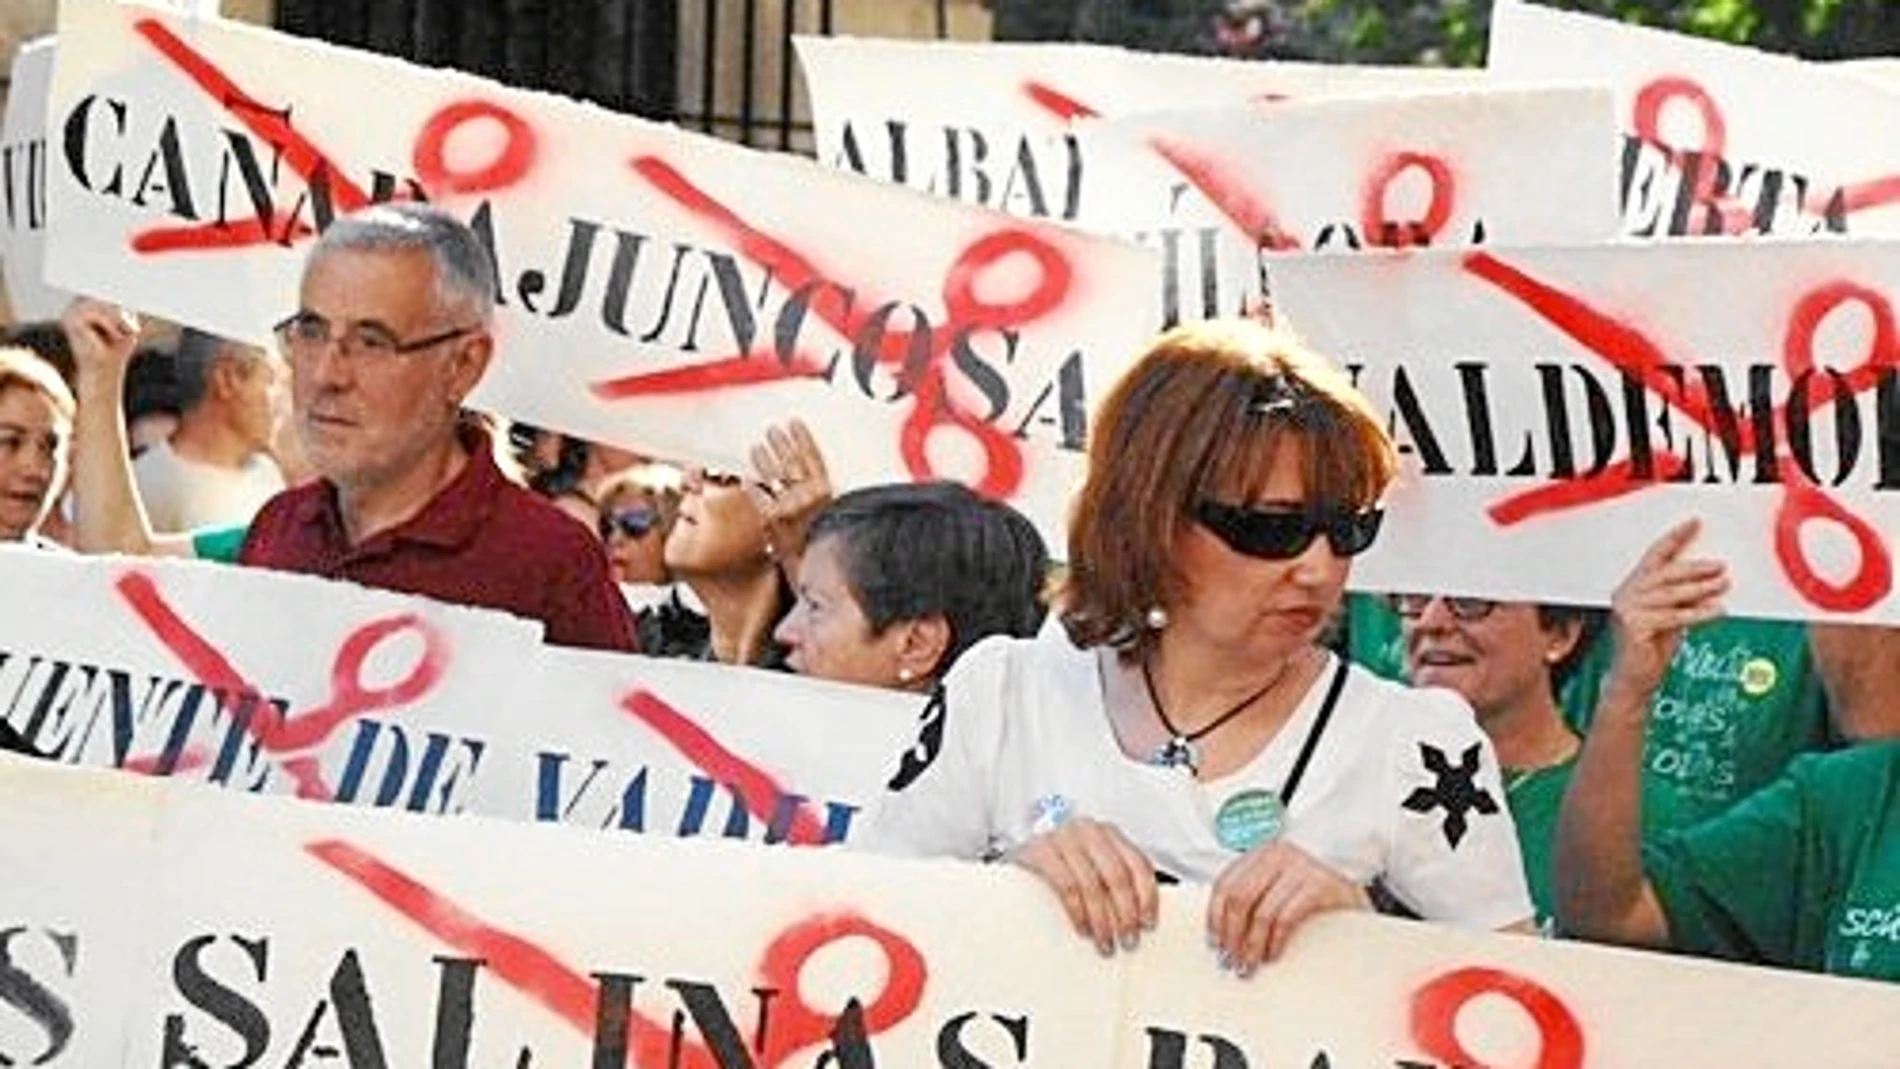 JOSÉ MANUEL MARTÍNEZ CENZANO Ex presidente de las Cortes de Castilla-La Mancha, ex alcalde de Cuenca y ex Defensor del Pueblo CLM . En una protesta en Cuenca en 2011.